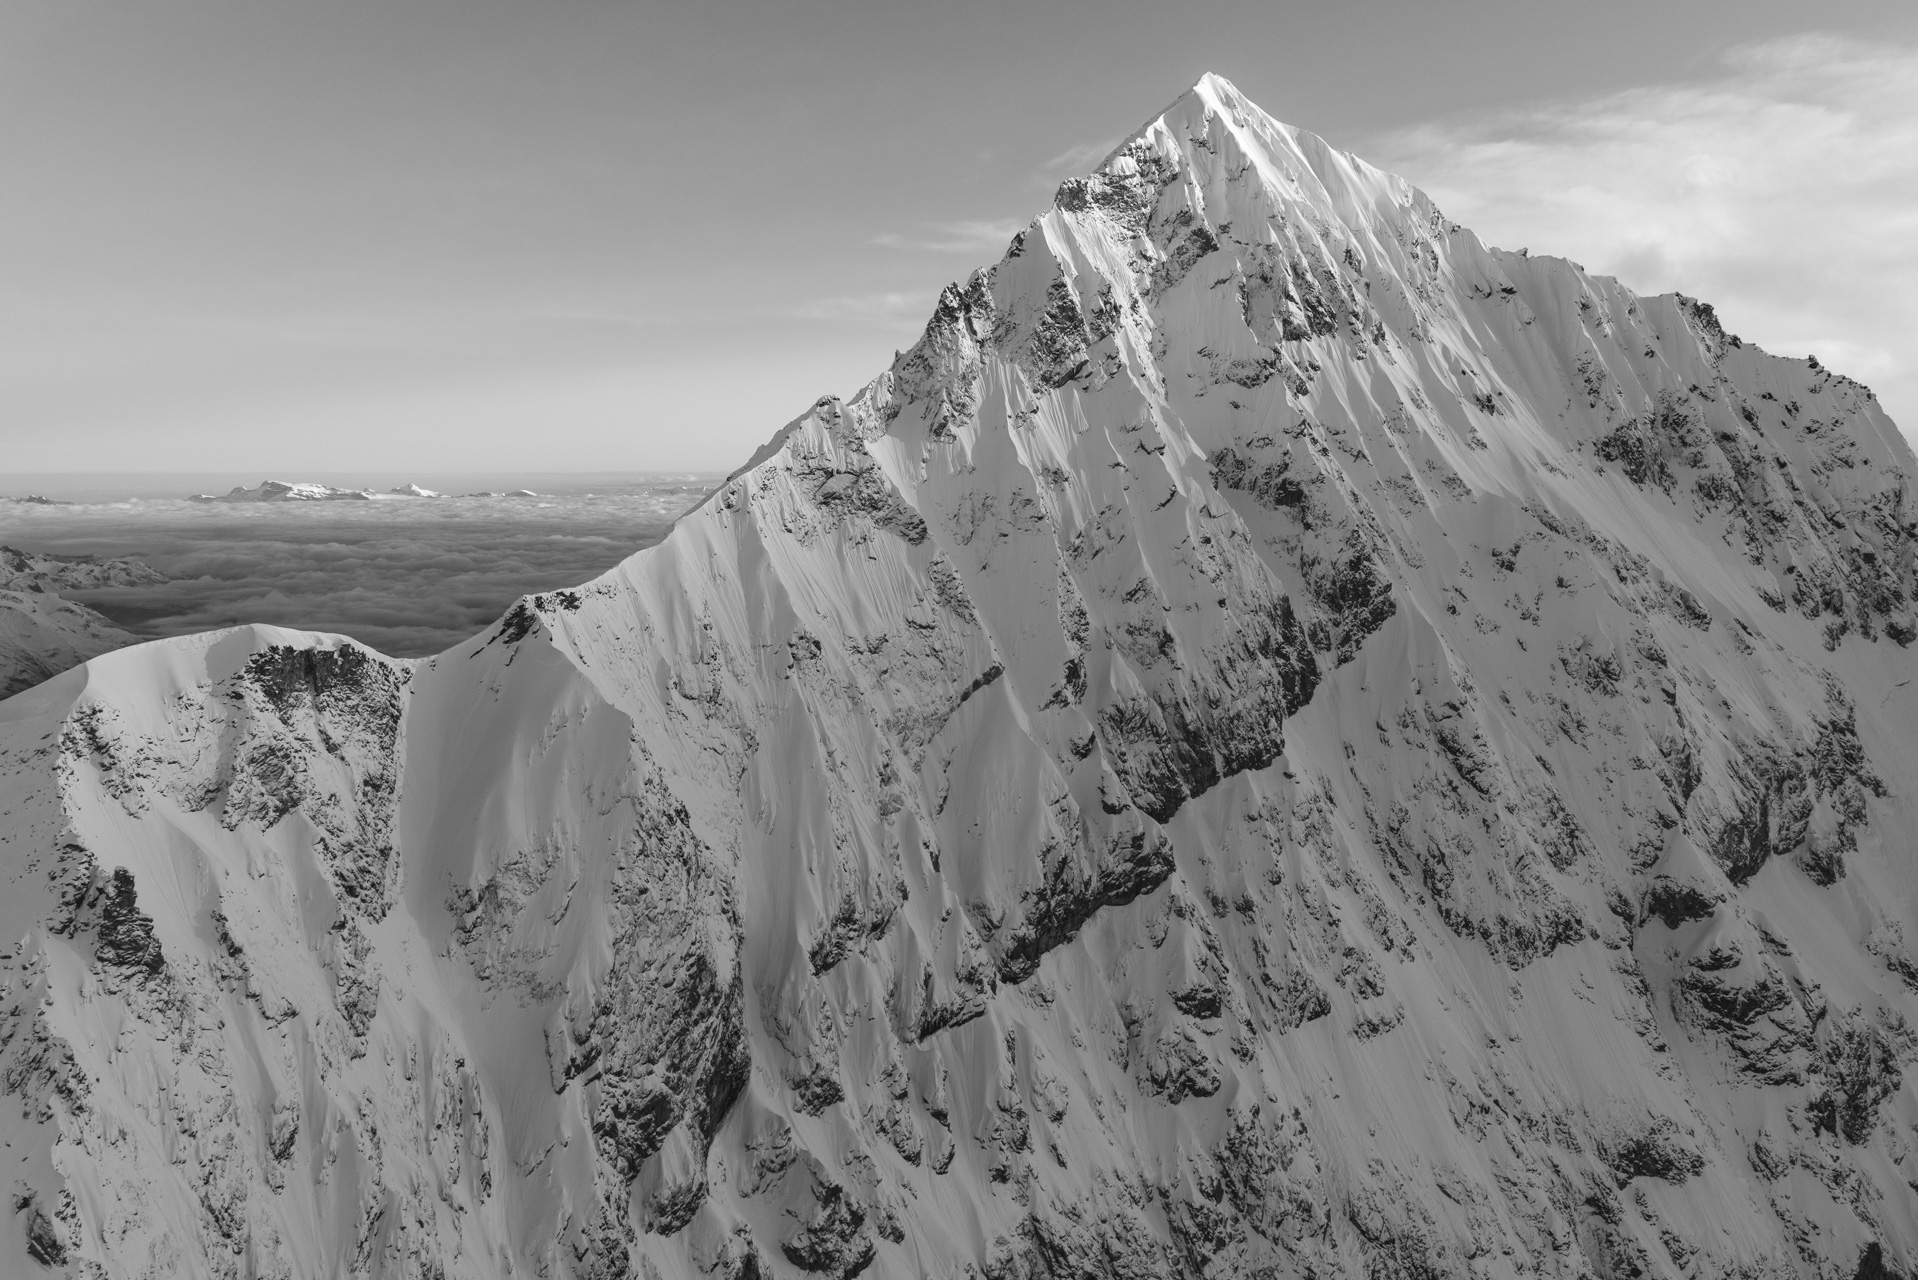 Schwarz-weiss Bergfoto nach einem Sturm auf der The Dent Blanche von Zermatt